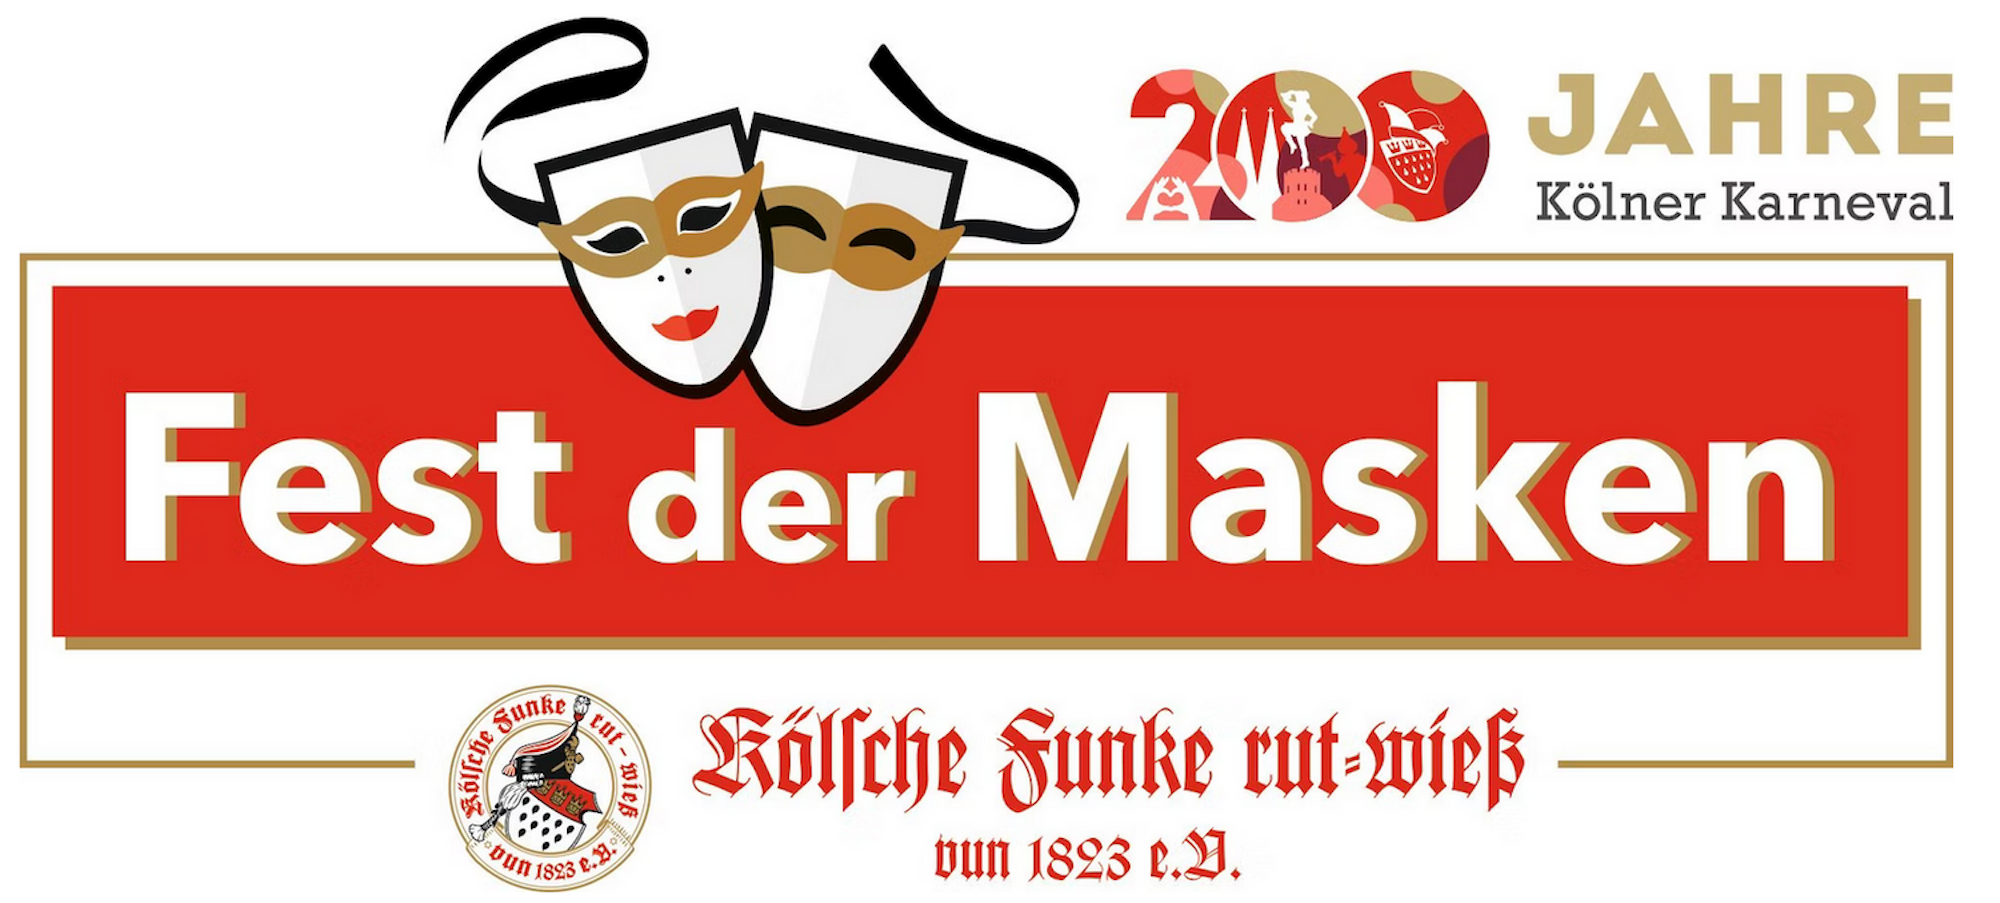 Das Fest der Masken steigt am 11. Februar 2023 ab 20 Uhr Gürzenich zu Köln.